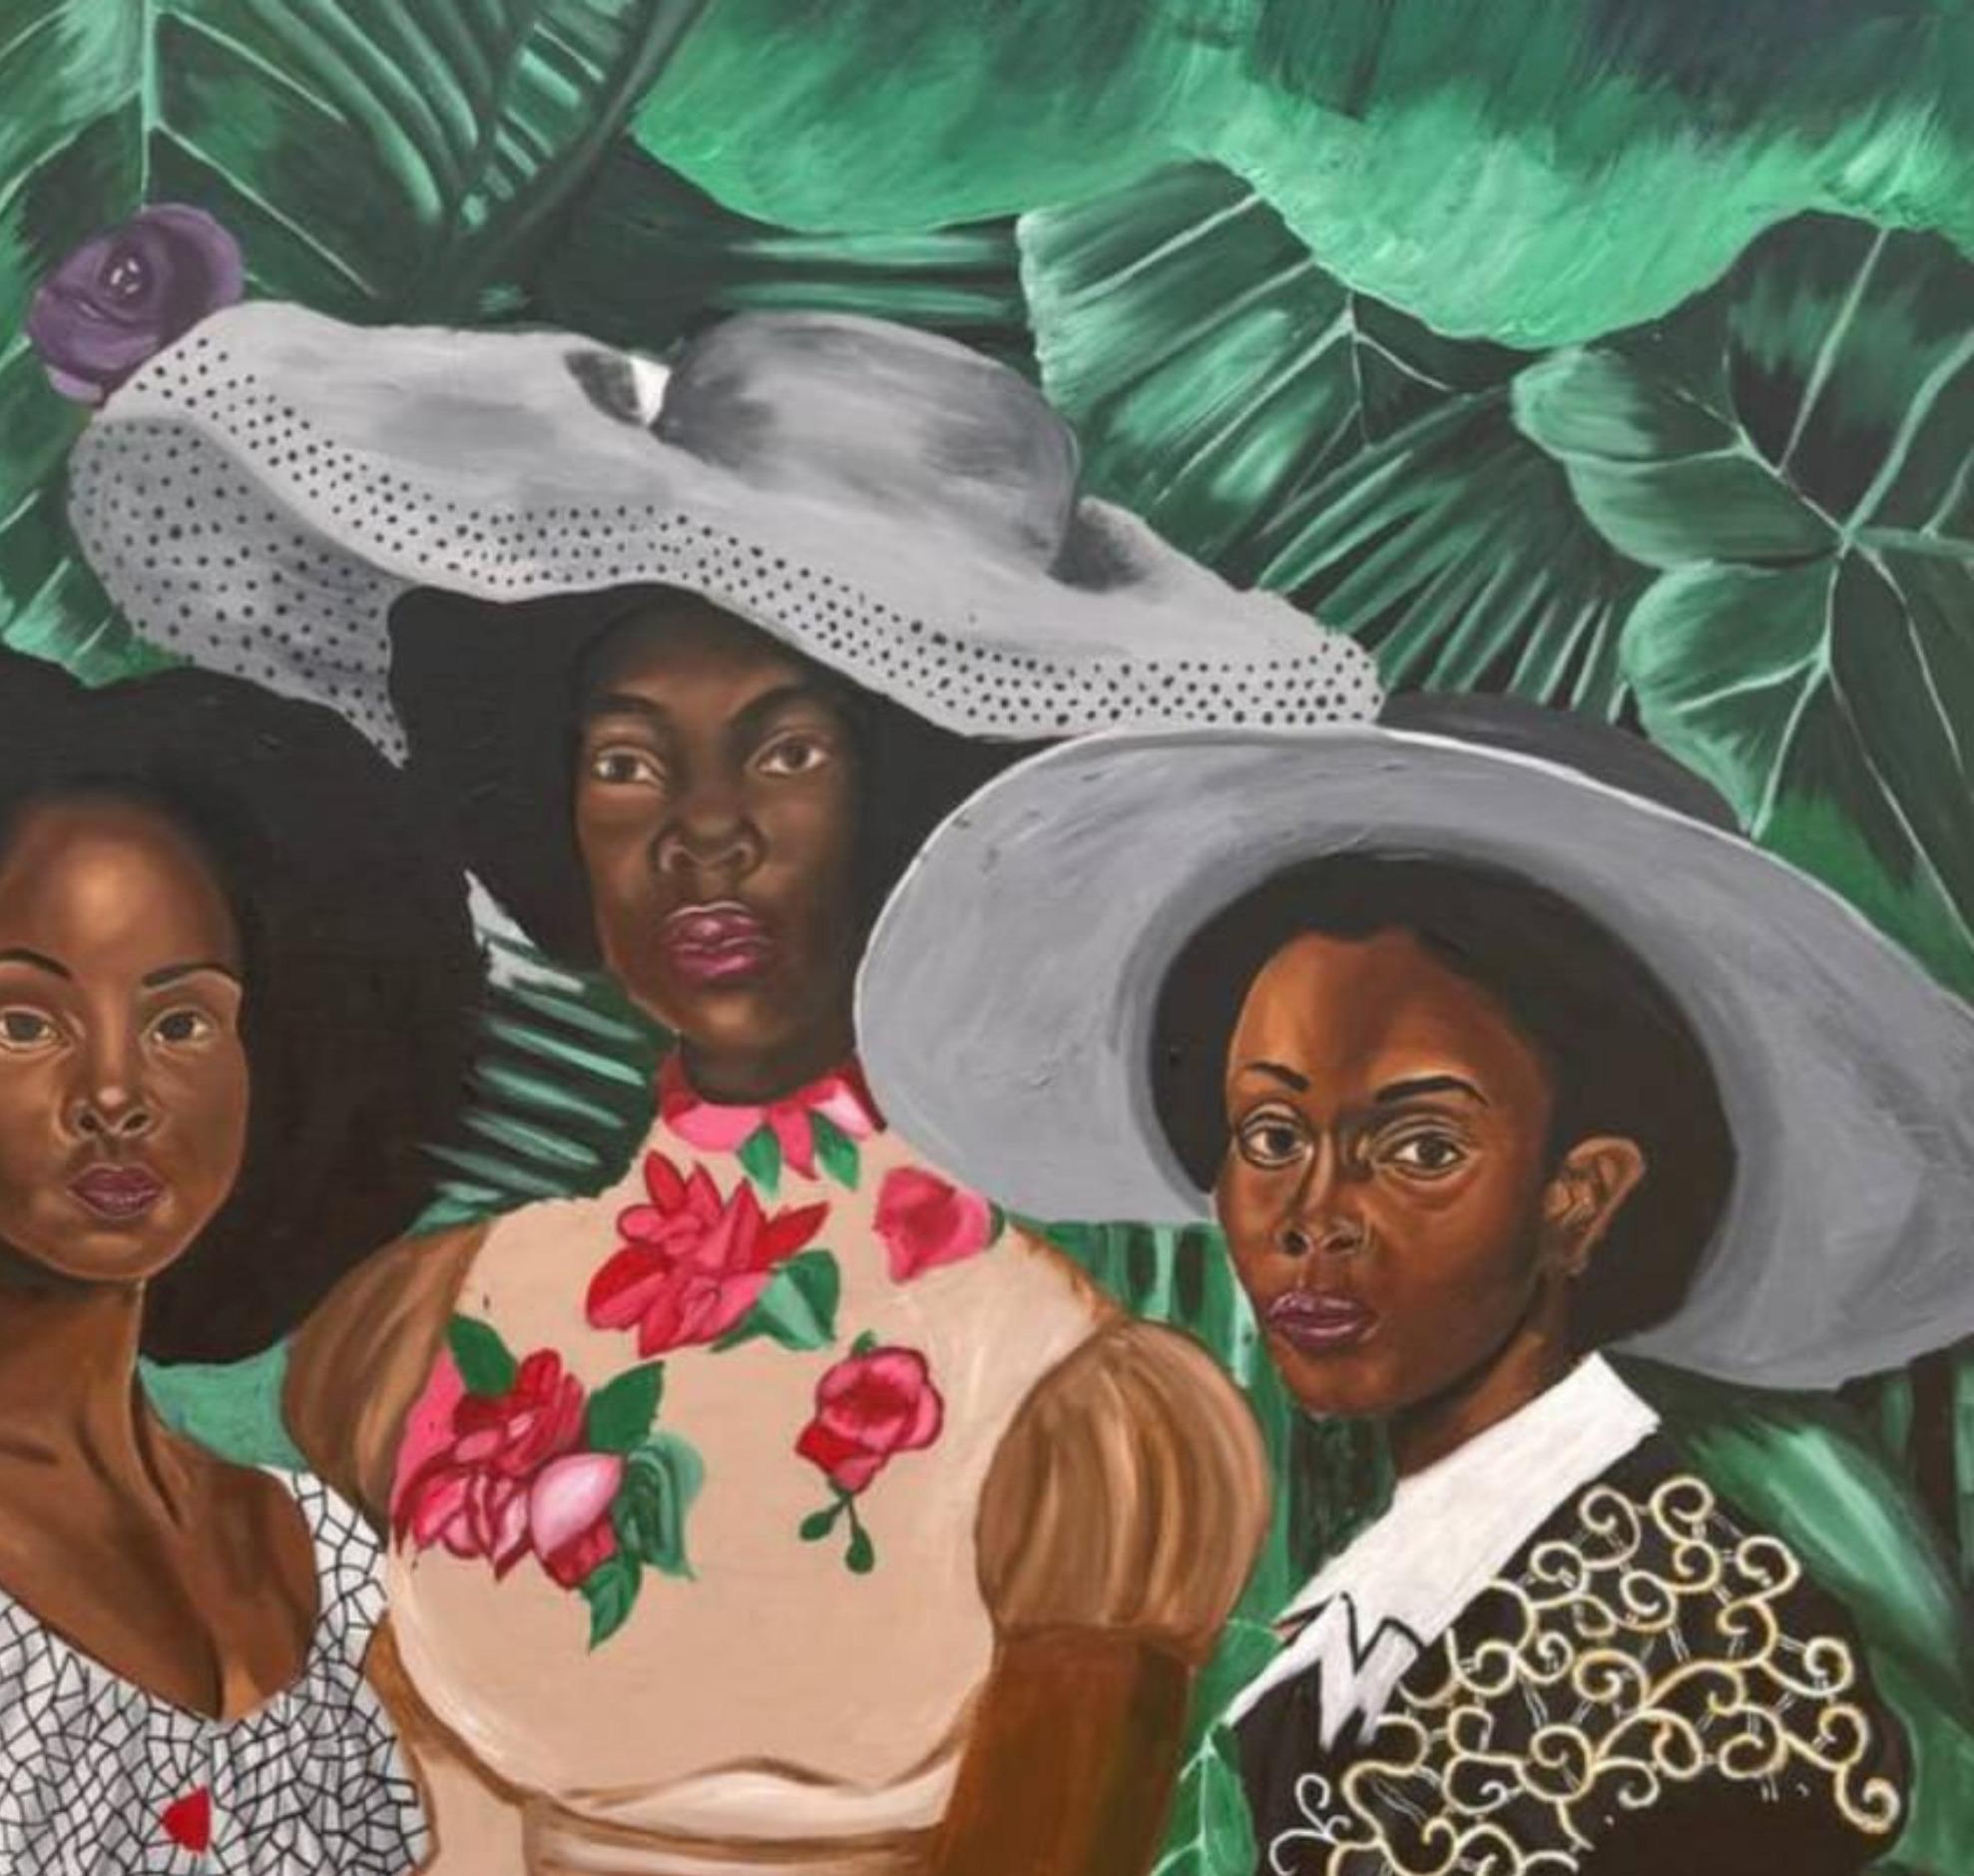 Fellow Feeling - Contemporary Painting by Olaosun Oluwapelumi